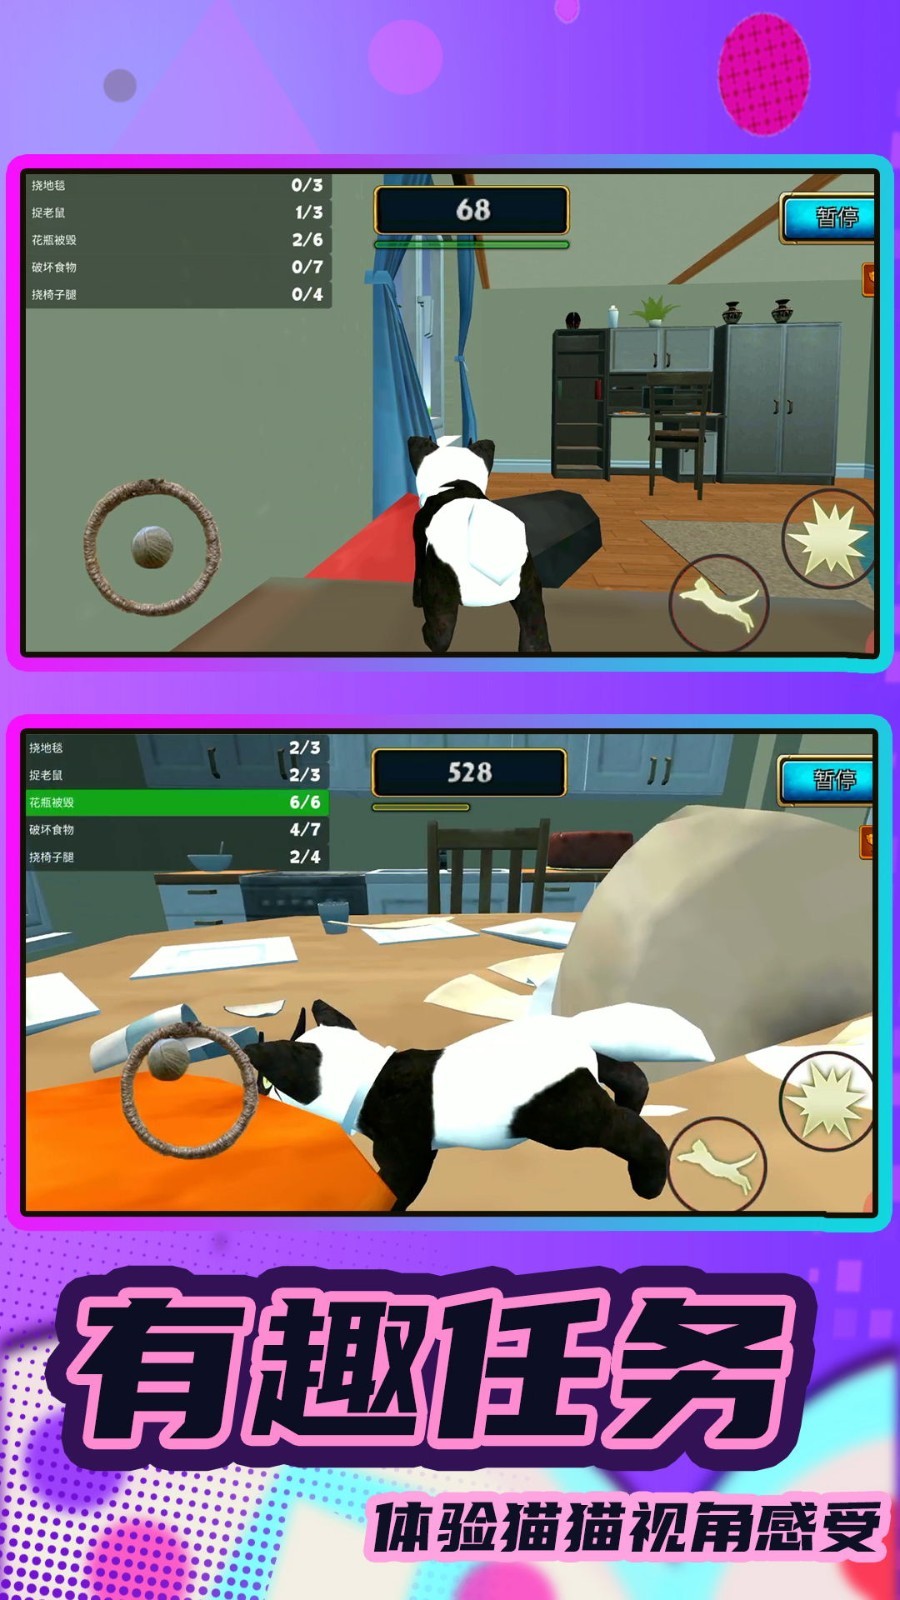 猫鼠跑酷之家安卓版游戏下载图片2